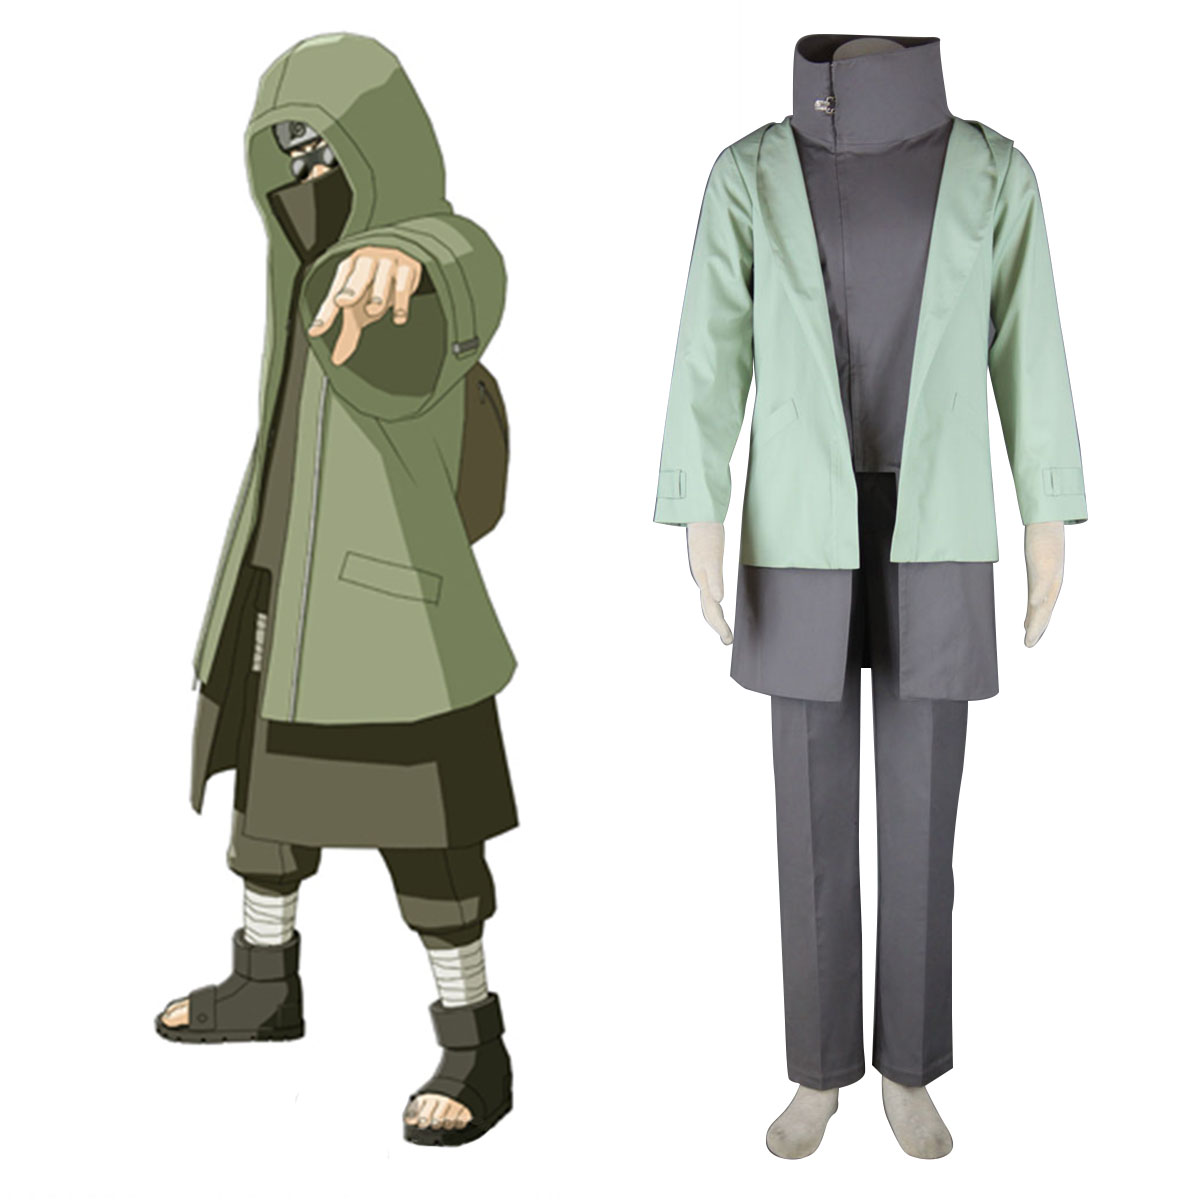 Naruto Shippuden Aburame Shino 2 Anime Cosplay Costumes Outfit